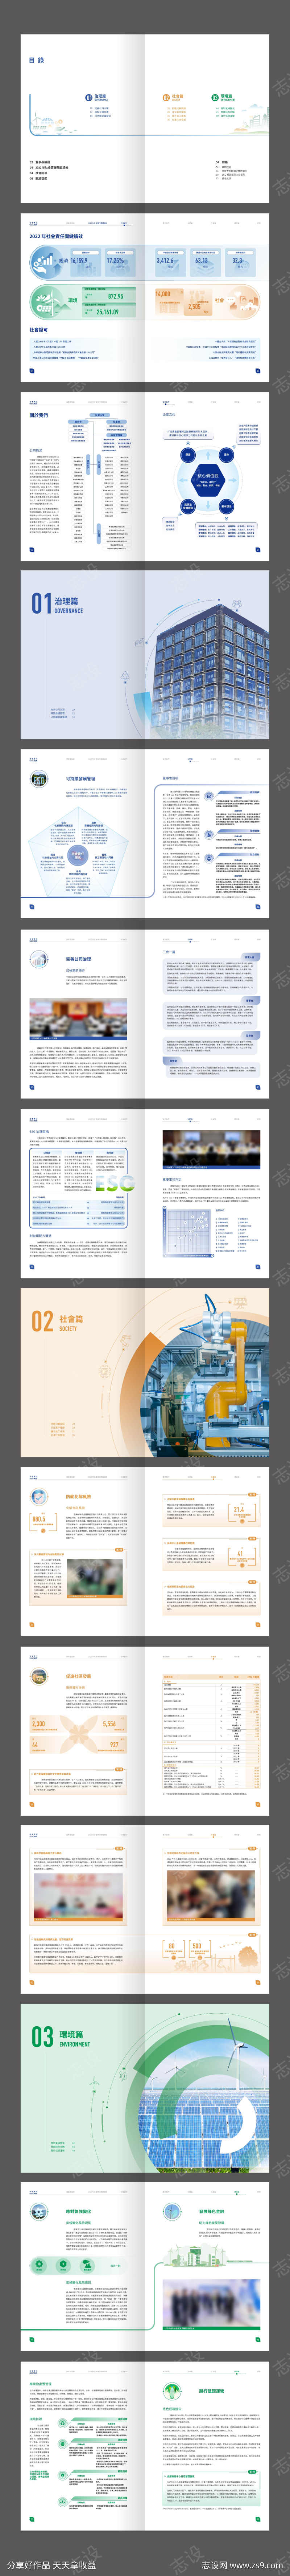 金融投资品牌企业年度报告画册